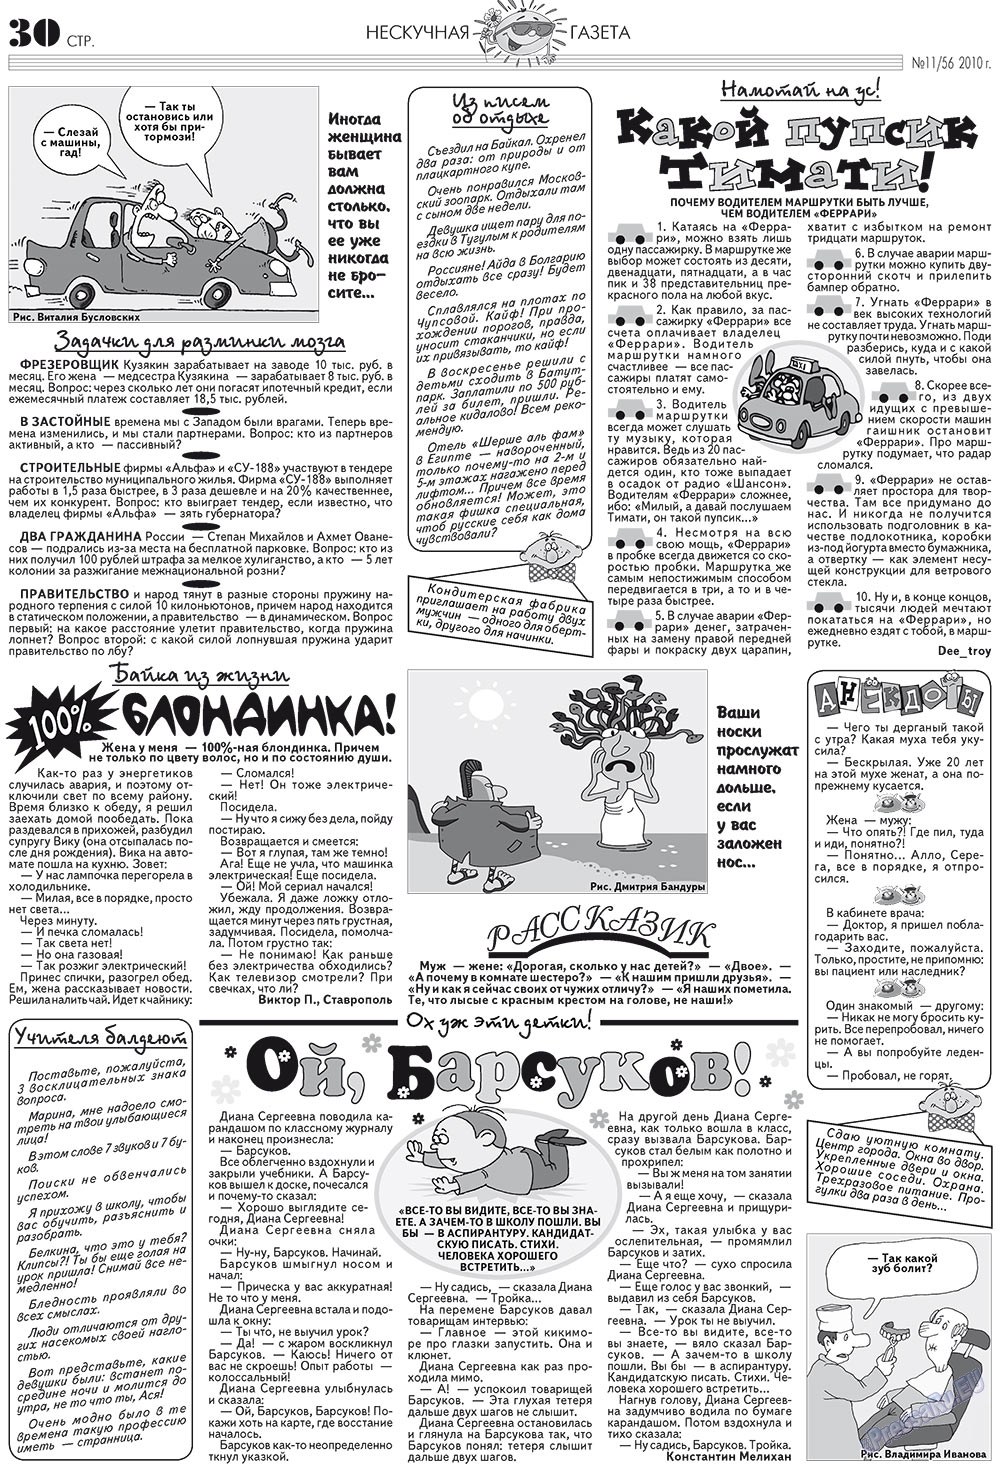 Нескучная газета (журнал). 2010 год, номер 11, стр. 26